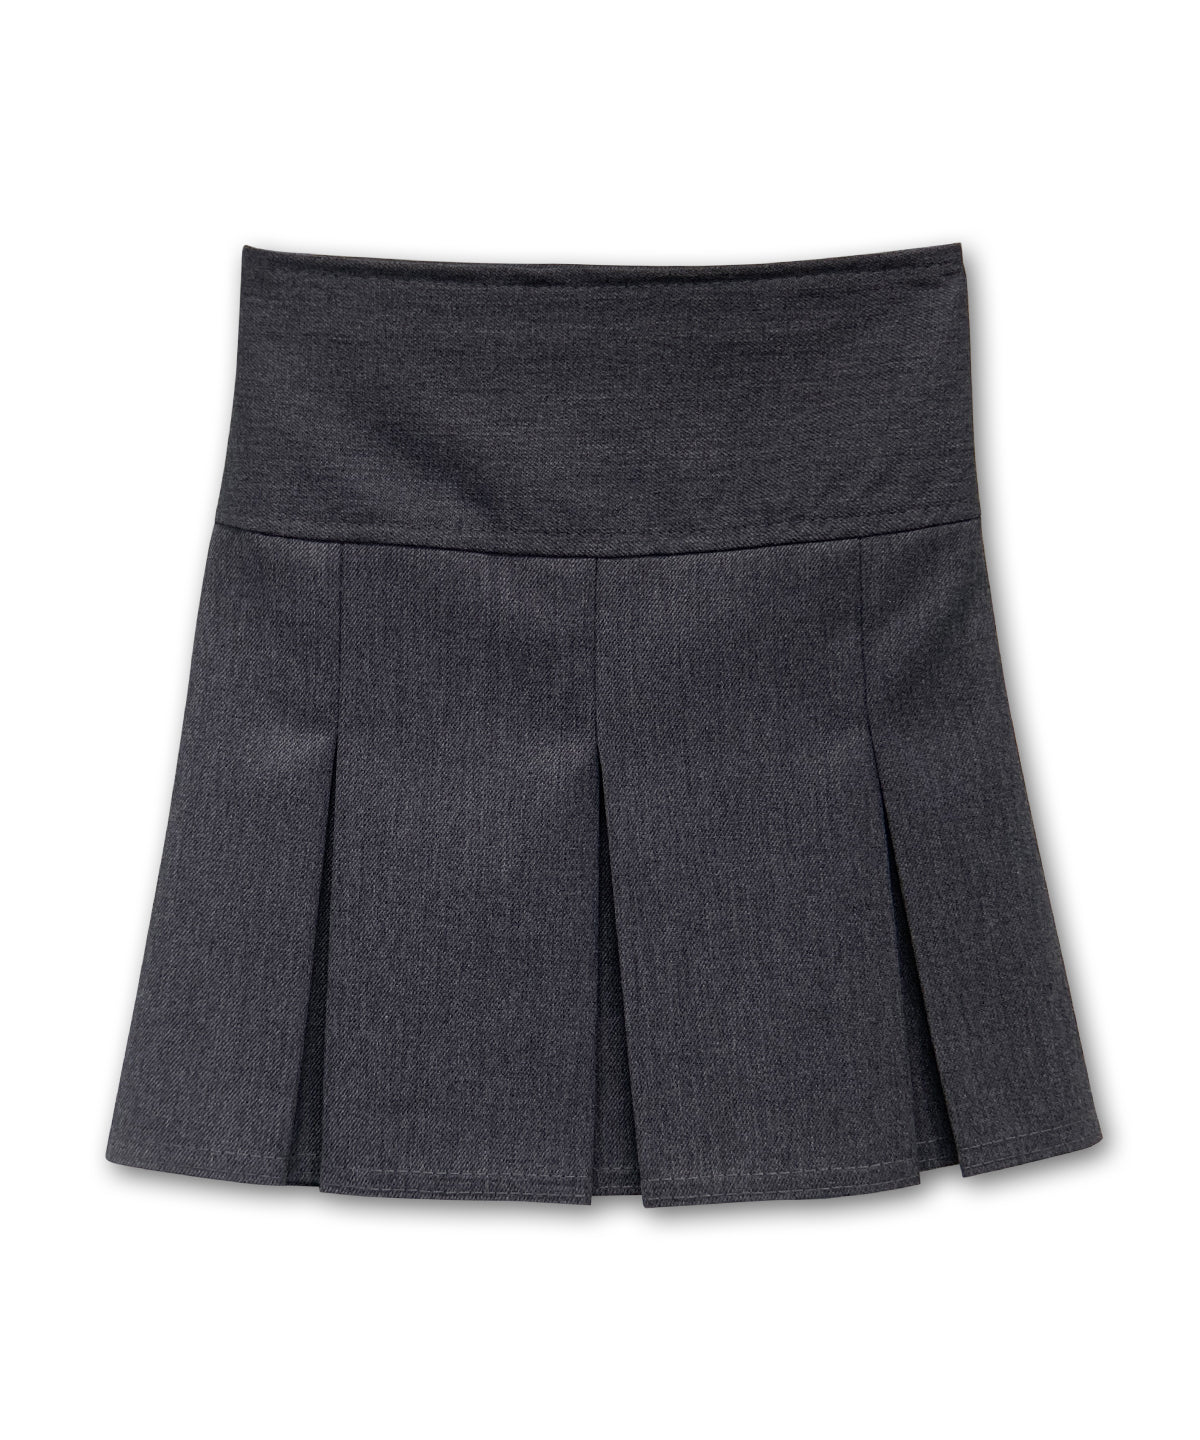 Girls' Tru Form Pleated School Skirt - Grey